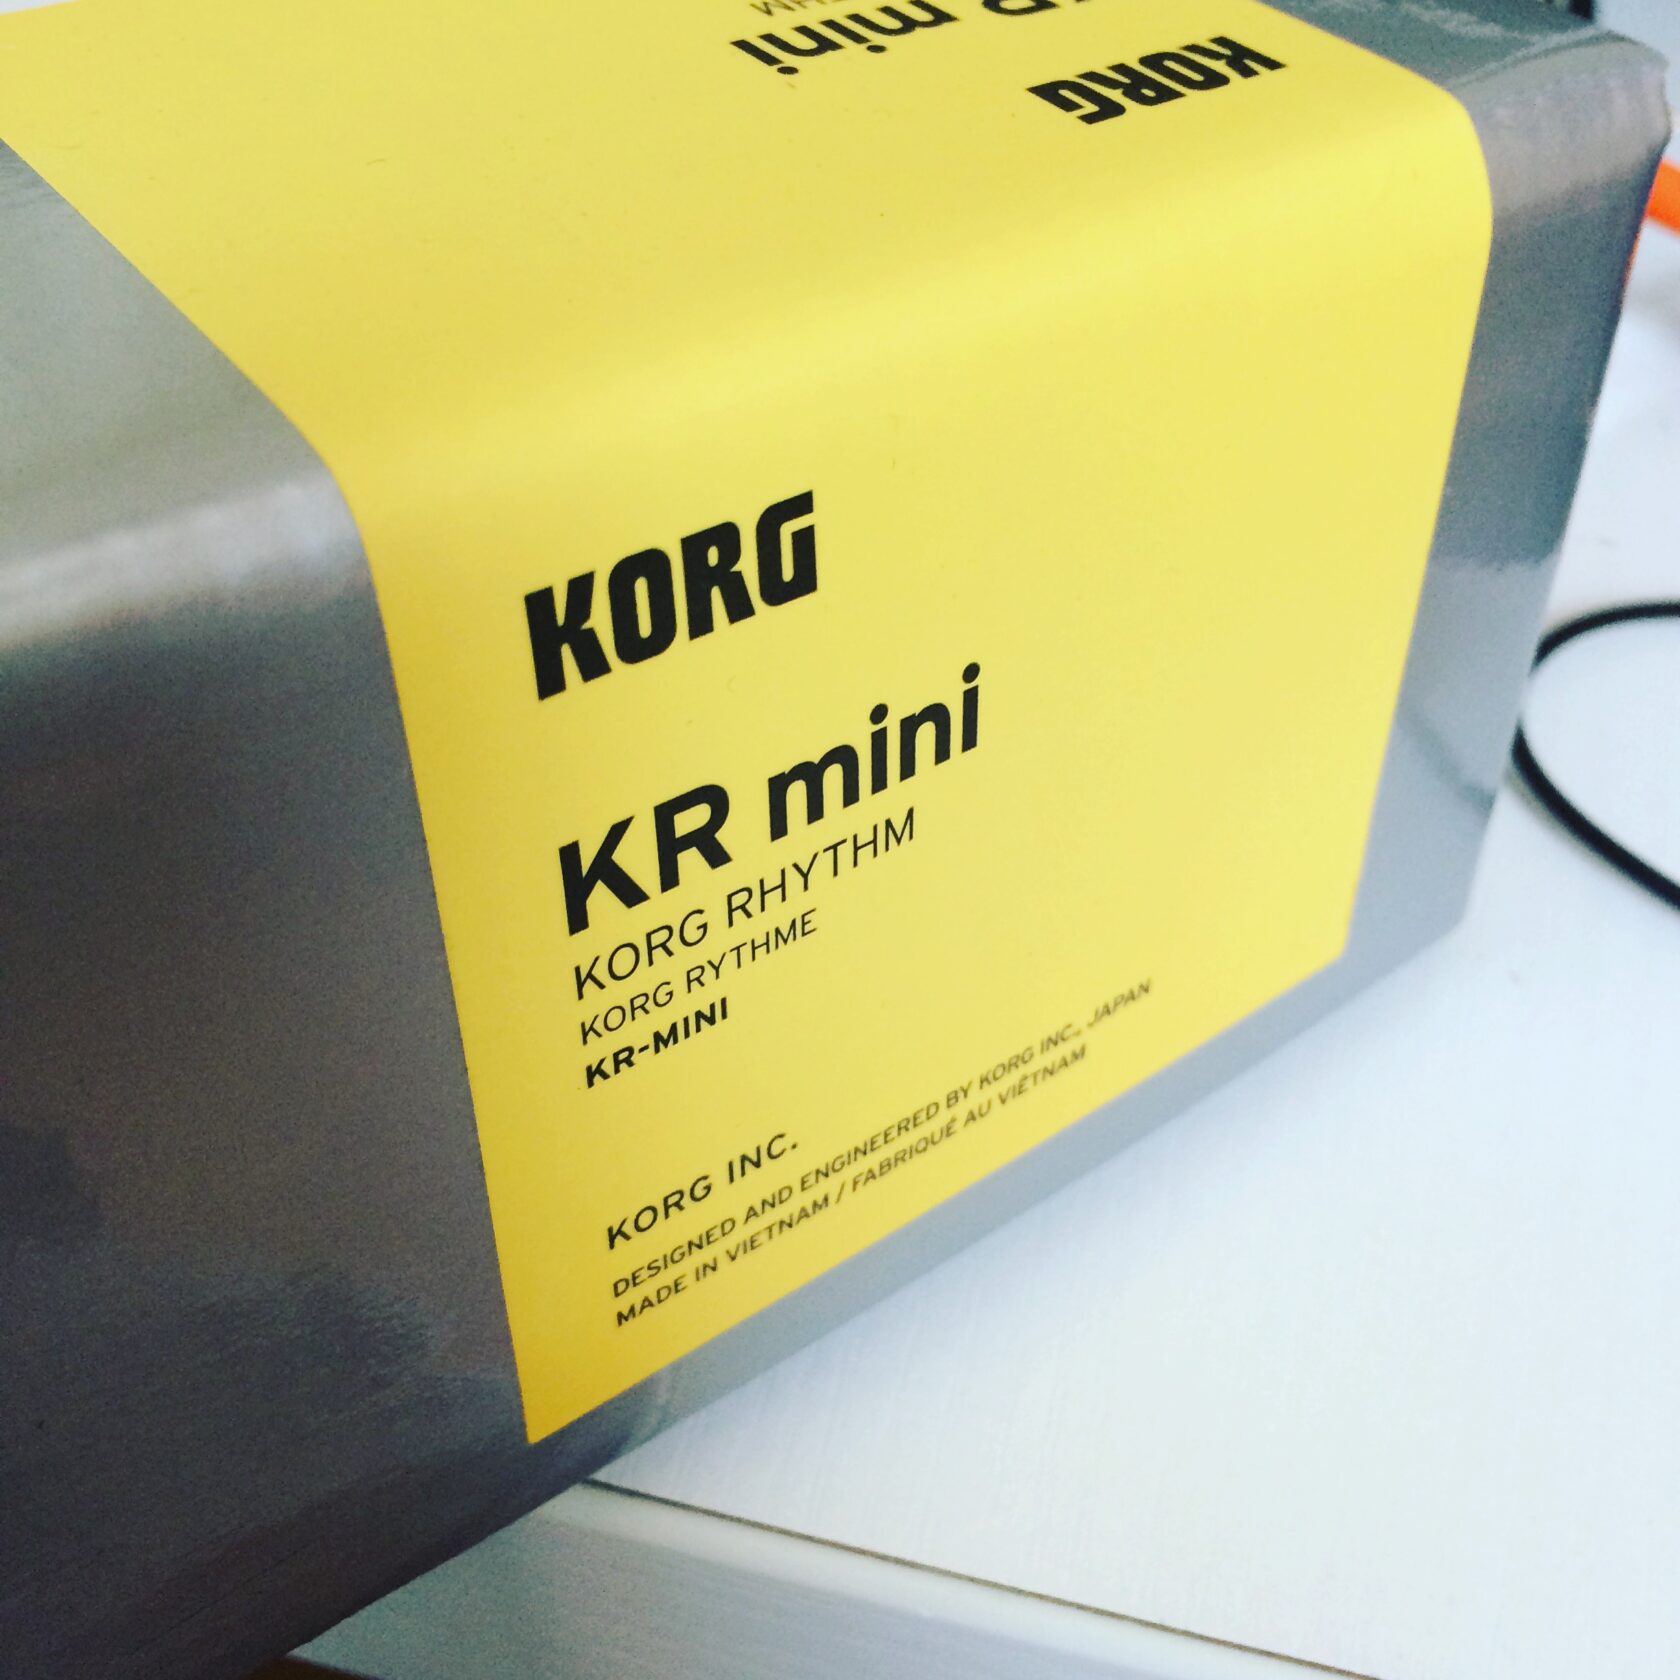 スピーカー内蔵リズムマシン KORG KR mini 購入レビュー | メタル 